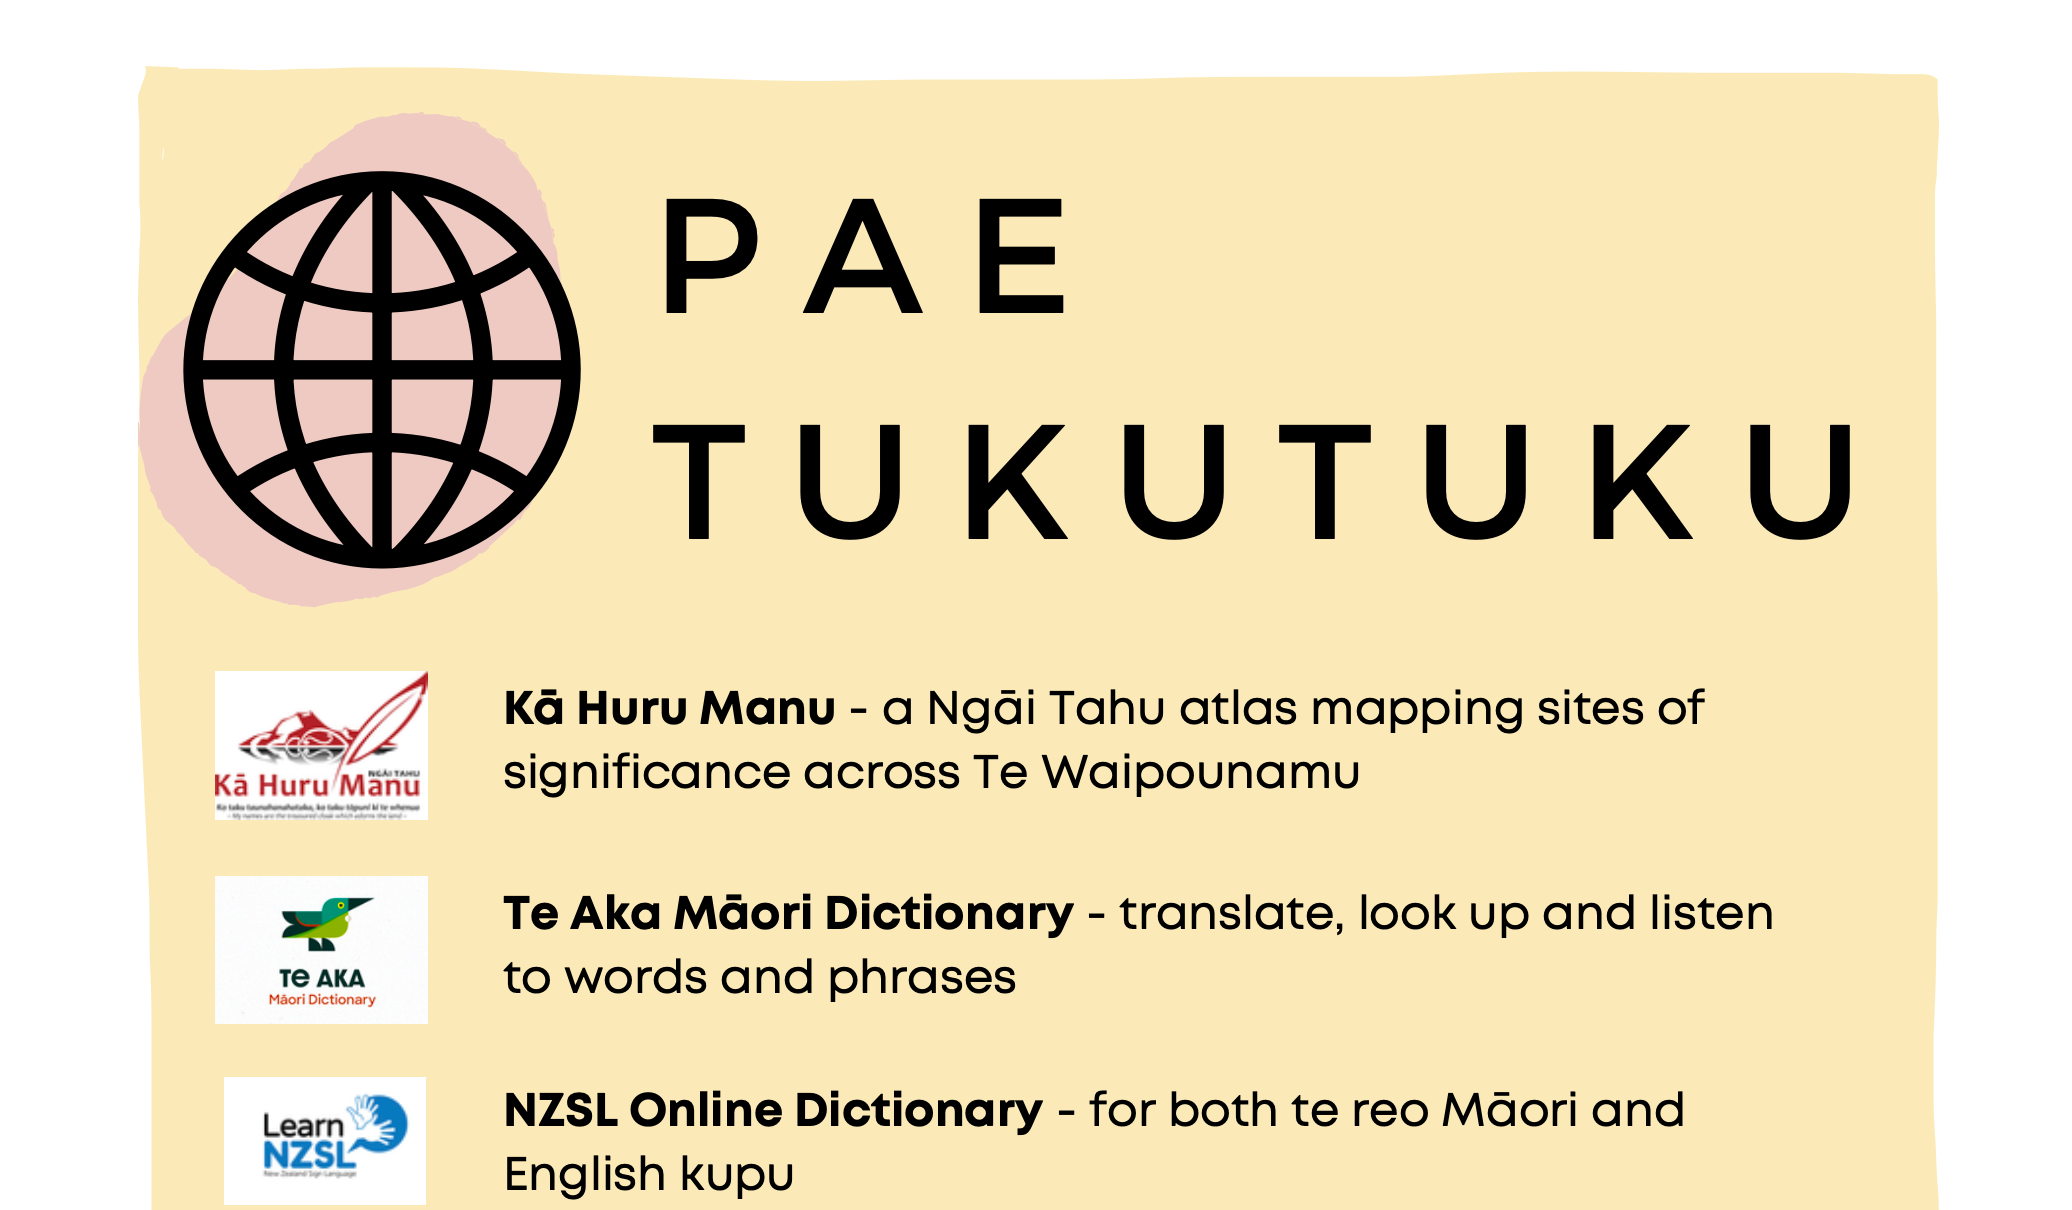 Pae Tukutuku/Websites to visit - free download